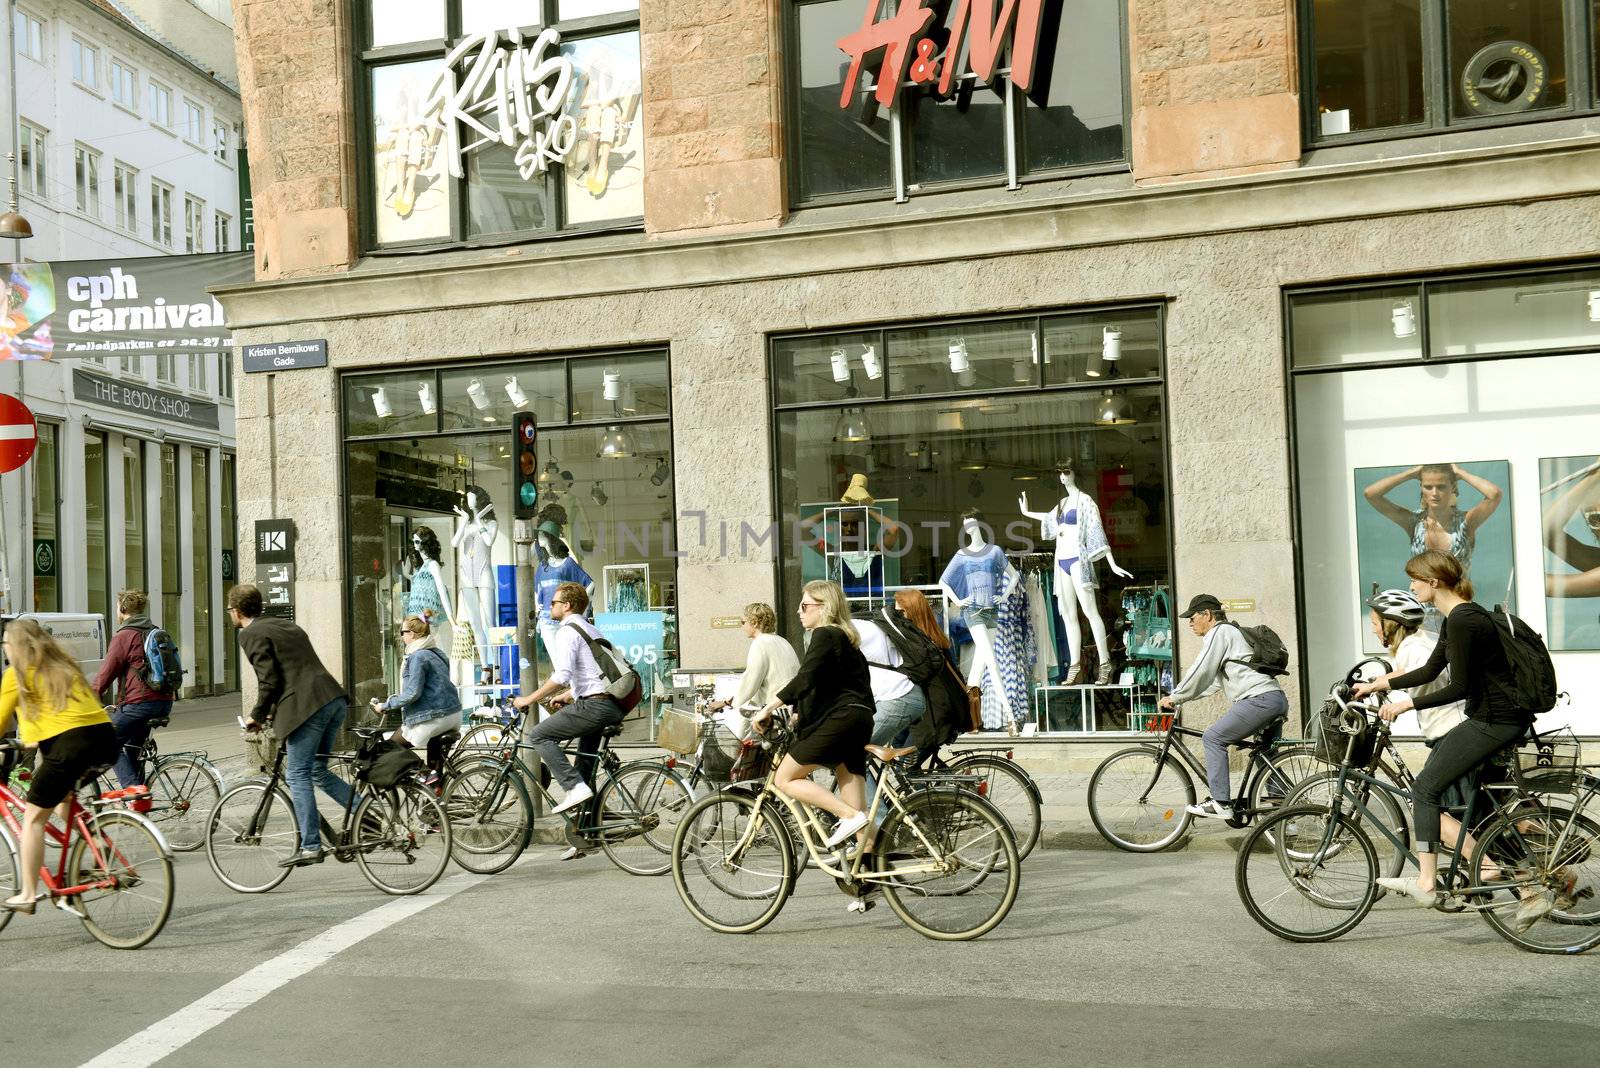 Copenhagen bicycle by Alenmax